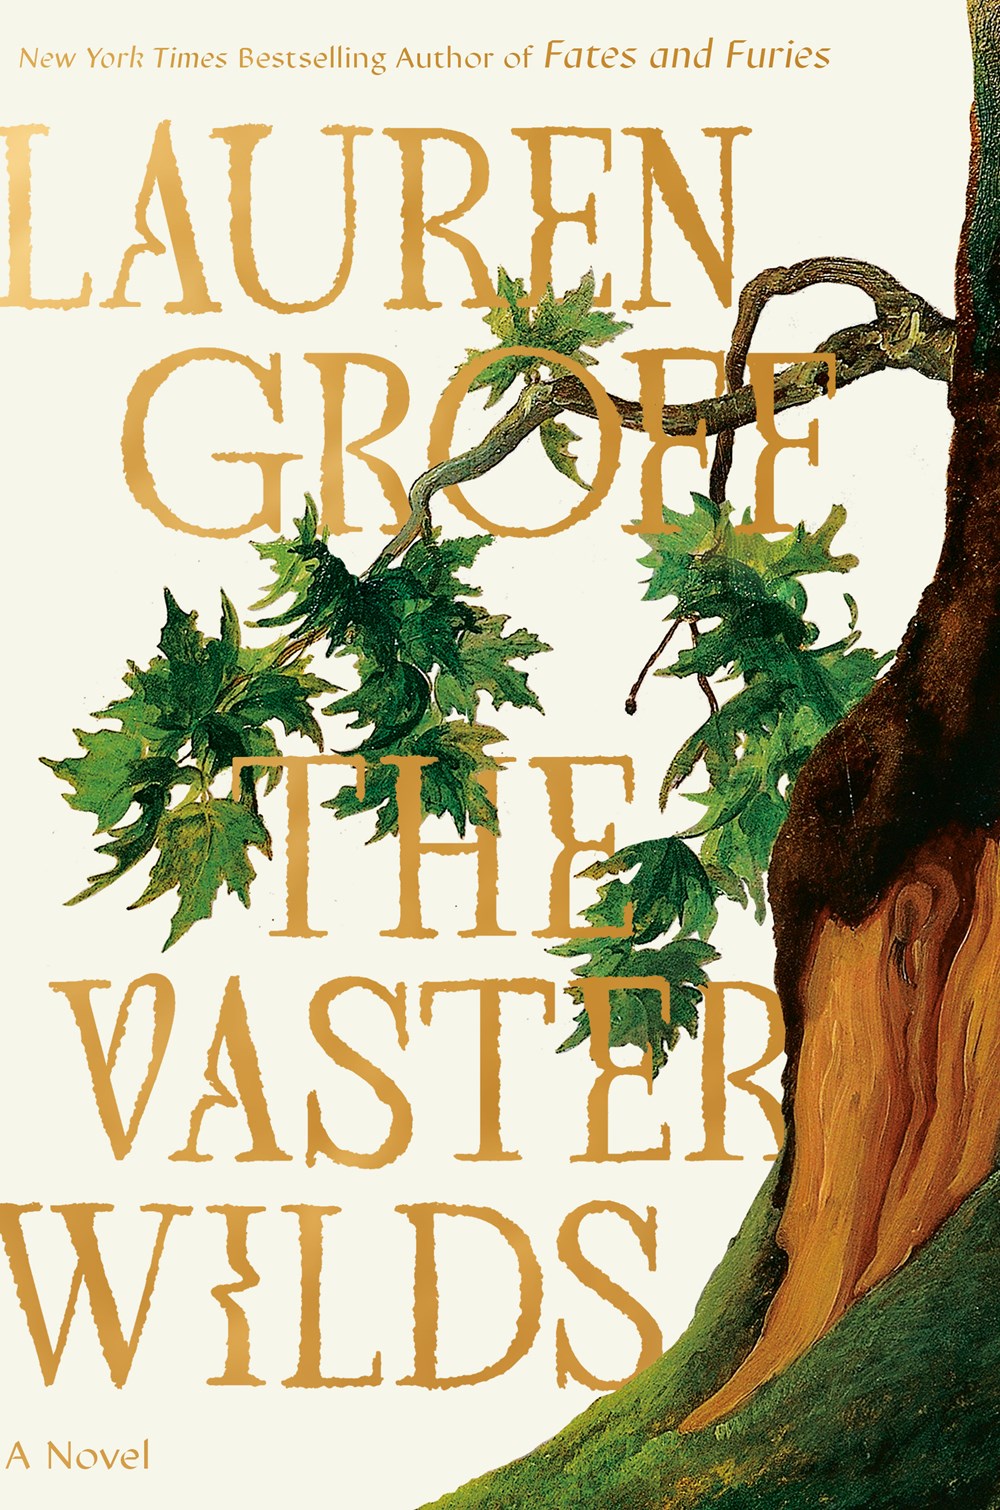 The Vaster Wilds by Lauren Groff